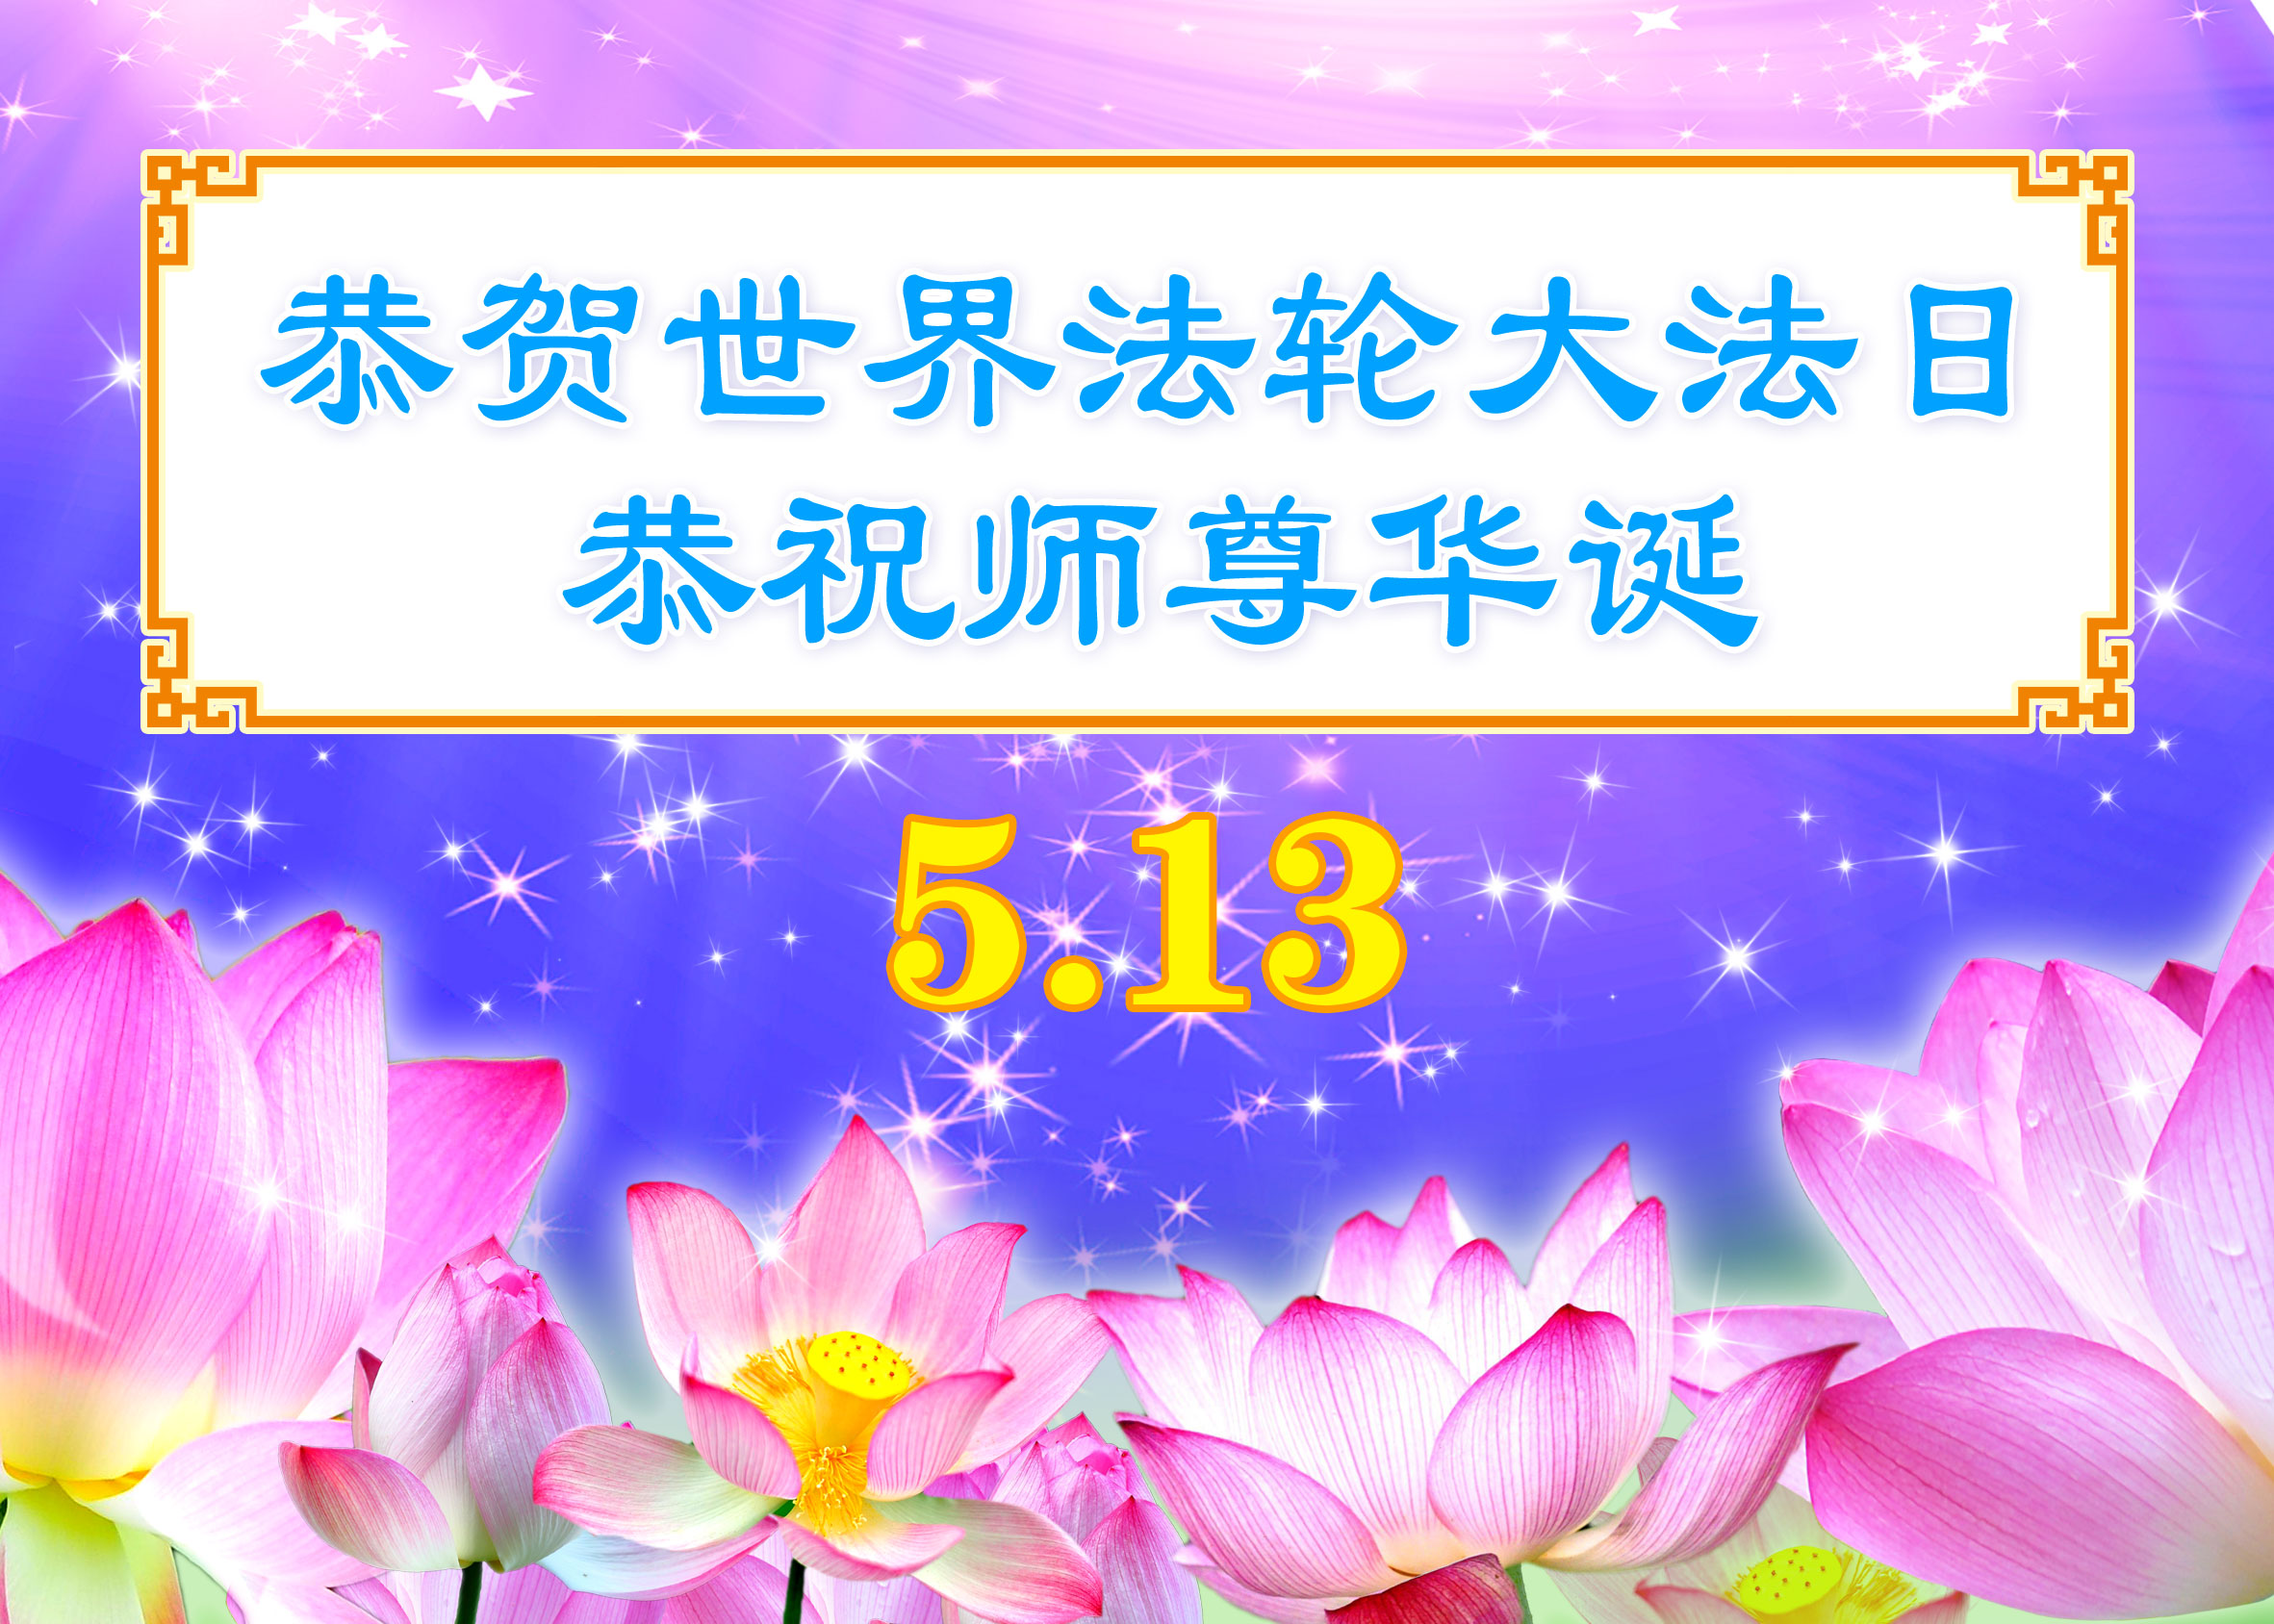 Image for article [Célébration de la Journée mondiale du Falun Dafa] Une pratiquante vietnamienne : « J'ai eu la chance de trouver Dafa »